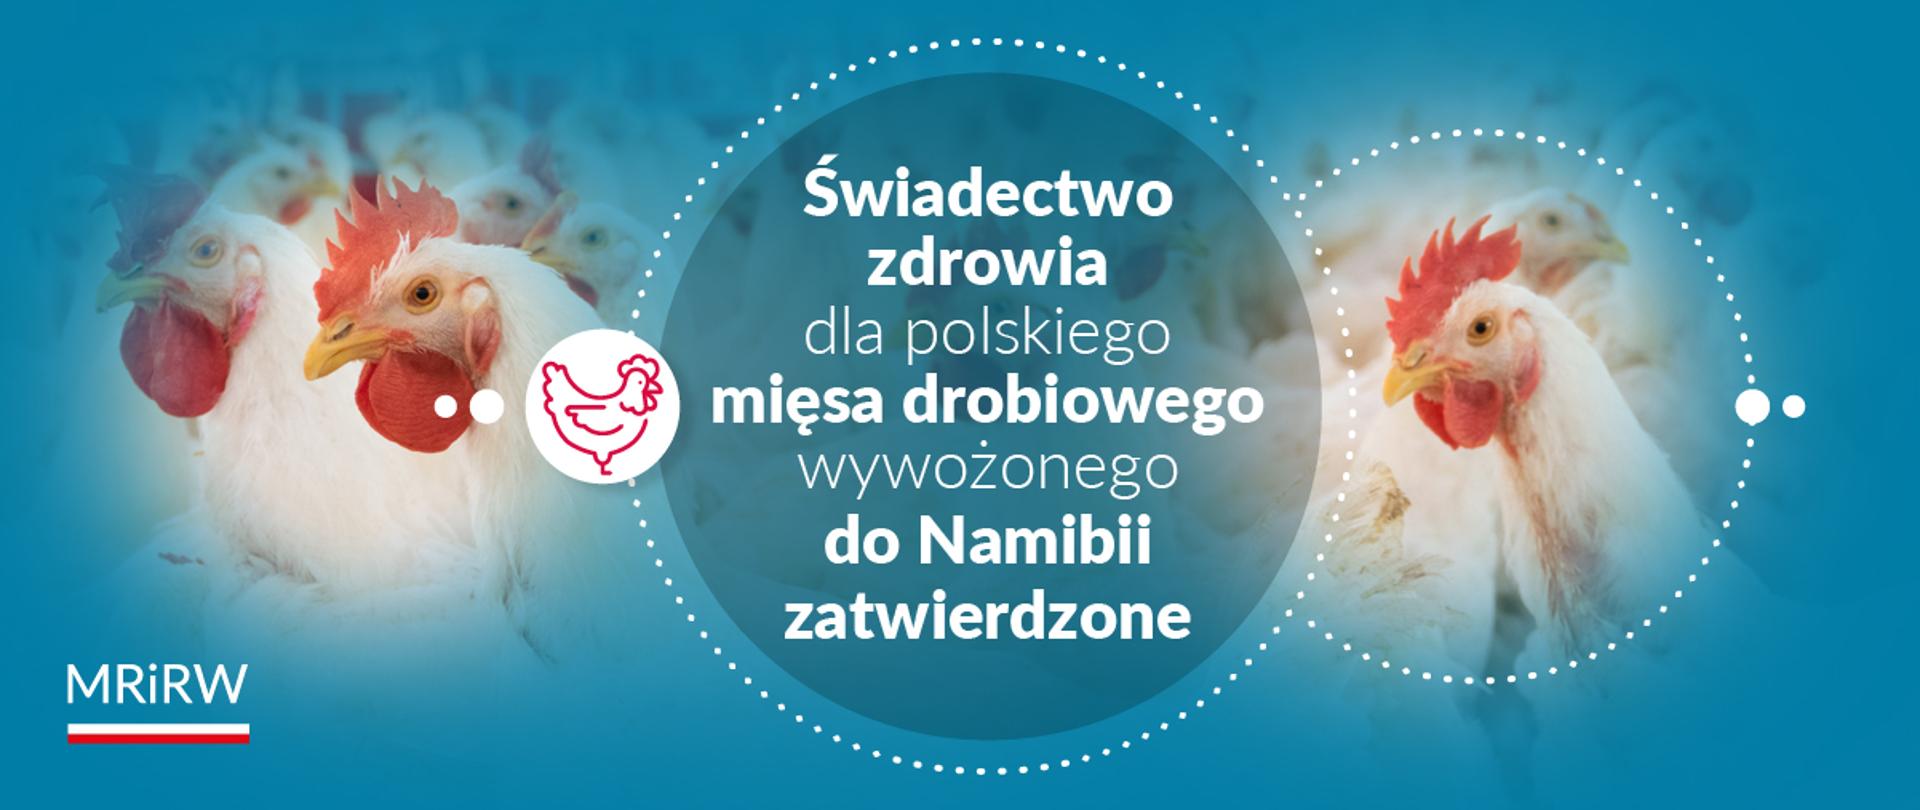 Zatwierdzone świadectwo zdrowia dla polskiego mięsa drobiowego wywożonego do Namibii